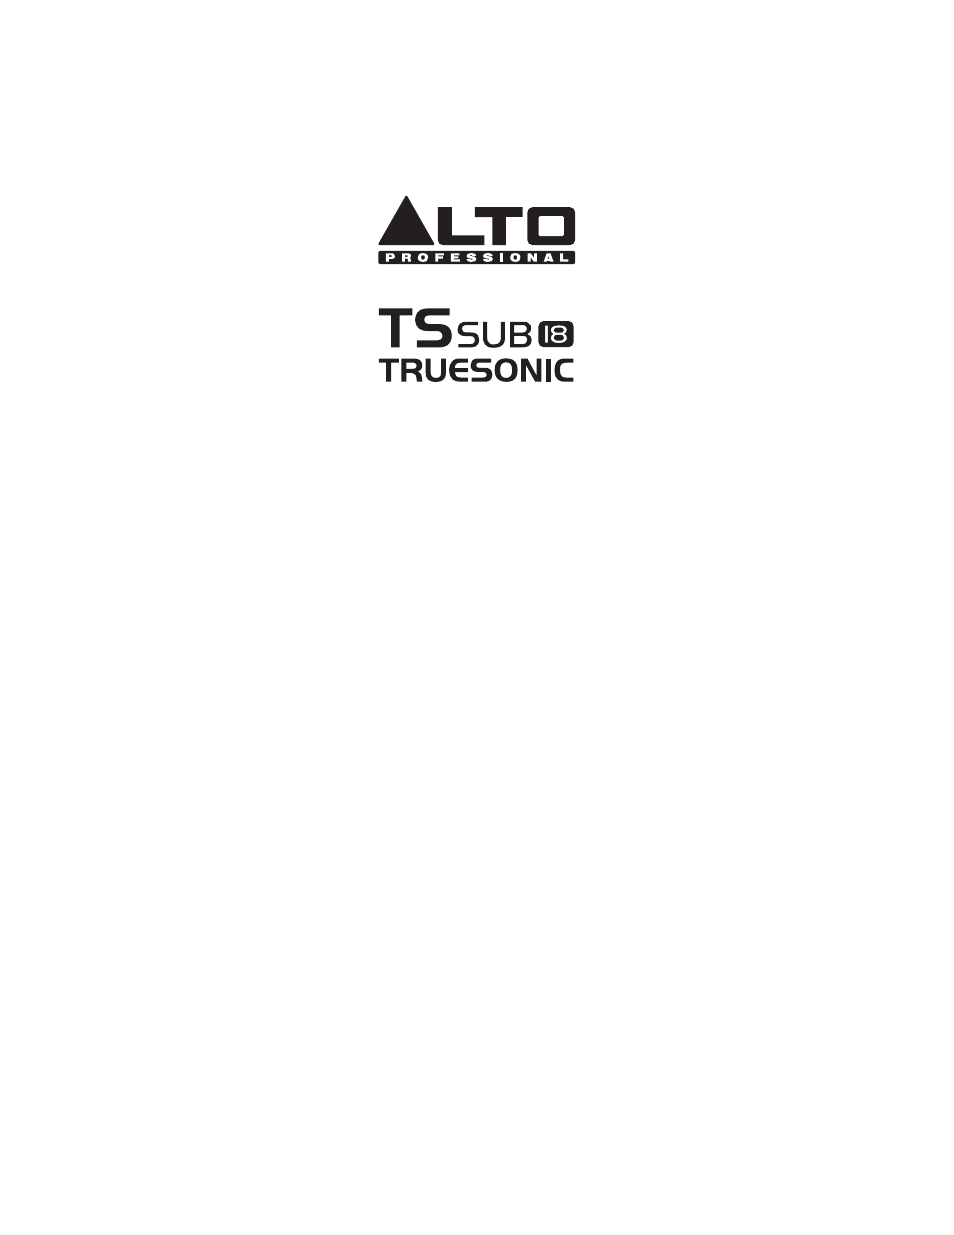 Alto Professional TSSUB18 User Manual | 8 pages | Also for: TSSUB15, TSSUB12